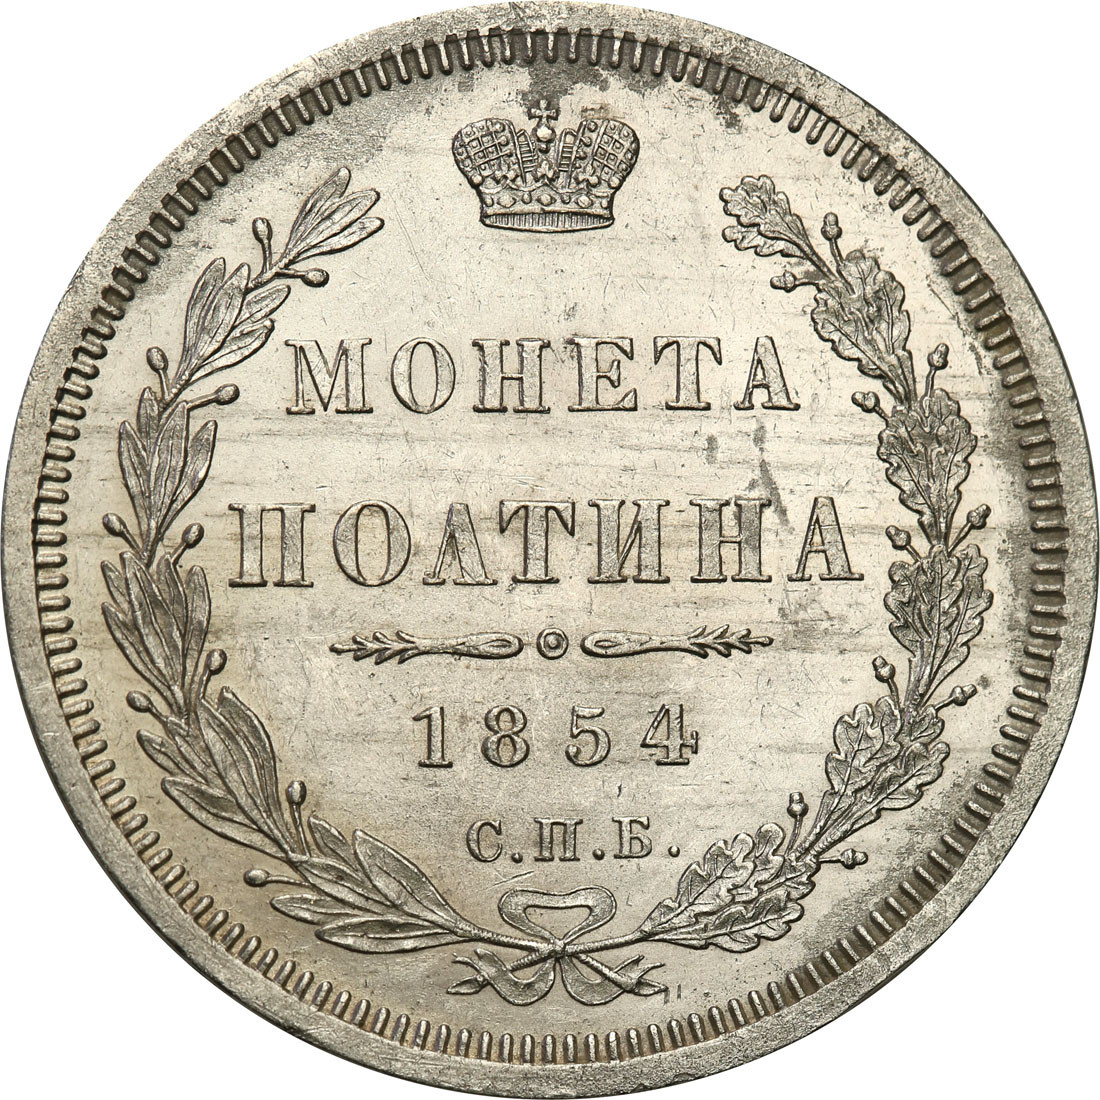 Rosja, Mikołaj l. Połtina (1/2 rubla) 1854, СПБ-HI, Petersburg - PIĘKNA